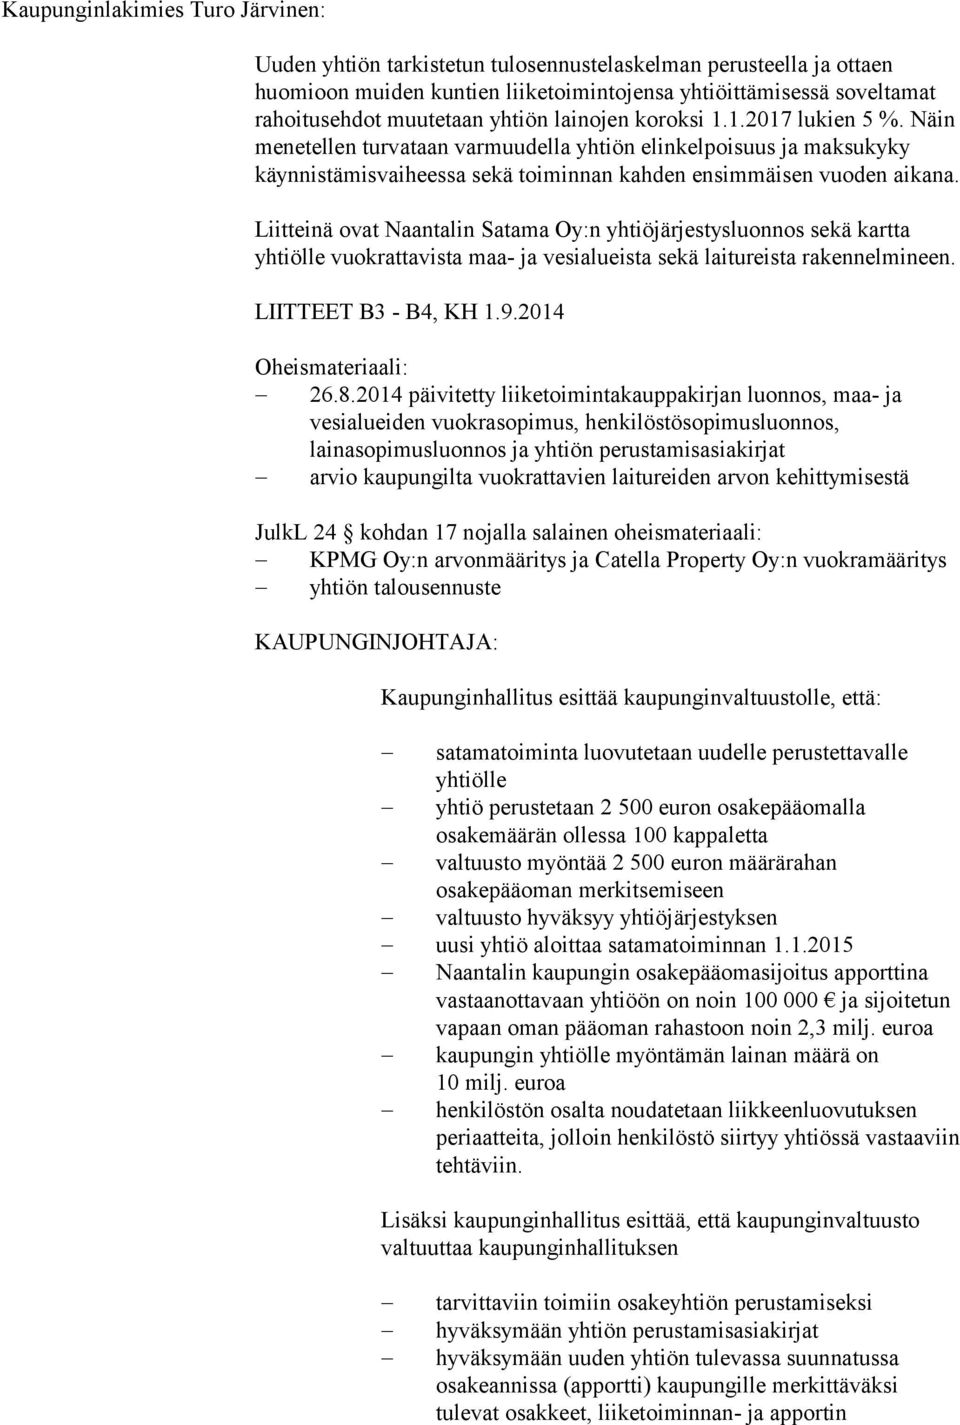 Liitteinä ovat Naantalin Satama Oy:n yhtiöjärjestysluonnos sekä kartta yhtiölle vuokrattavista maa- ja vesialueista sekä laitureista rakennelmineen. LIITTEET B3 - B4, KH 1.9.2014 Oheismateriaali: 26.